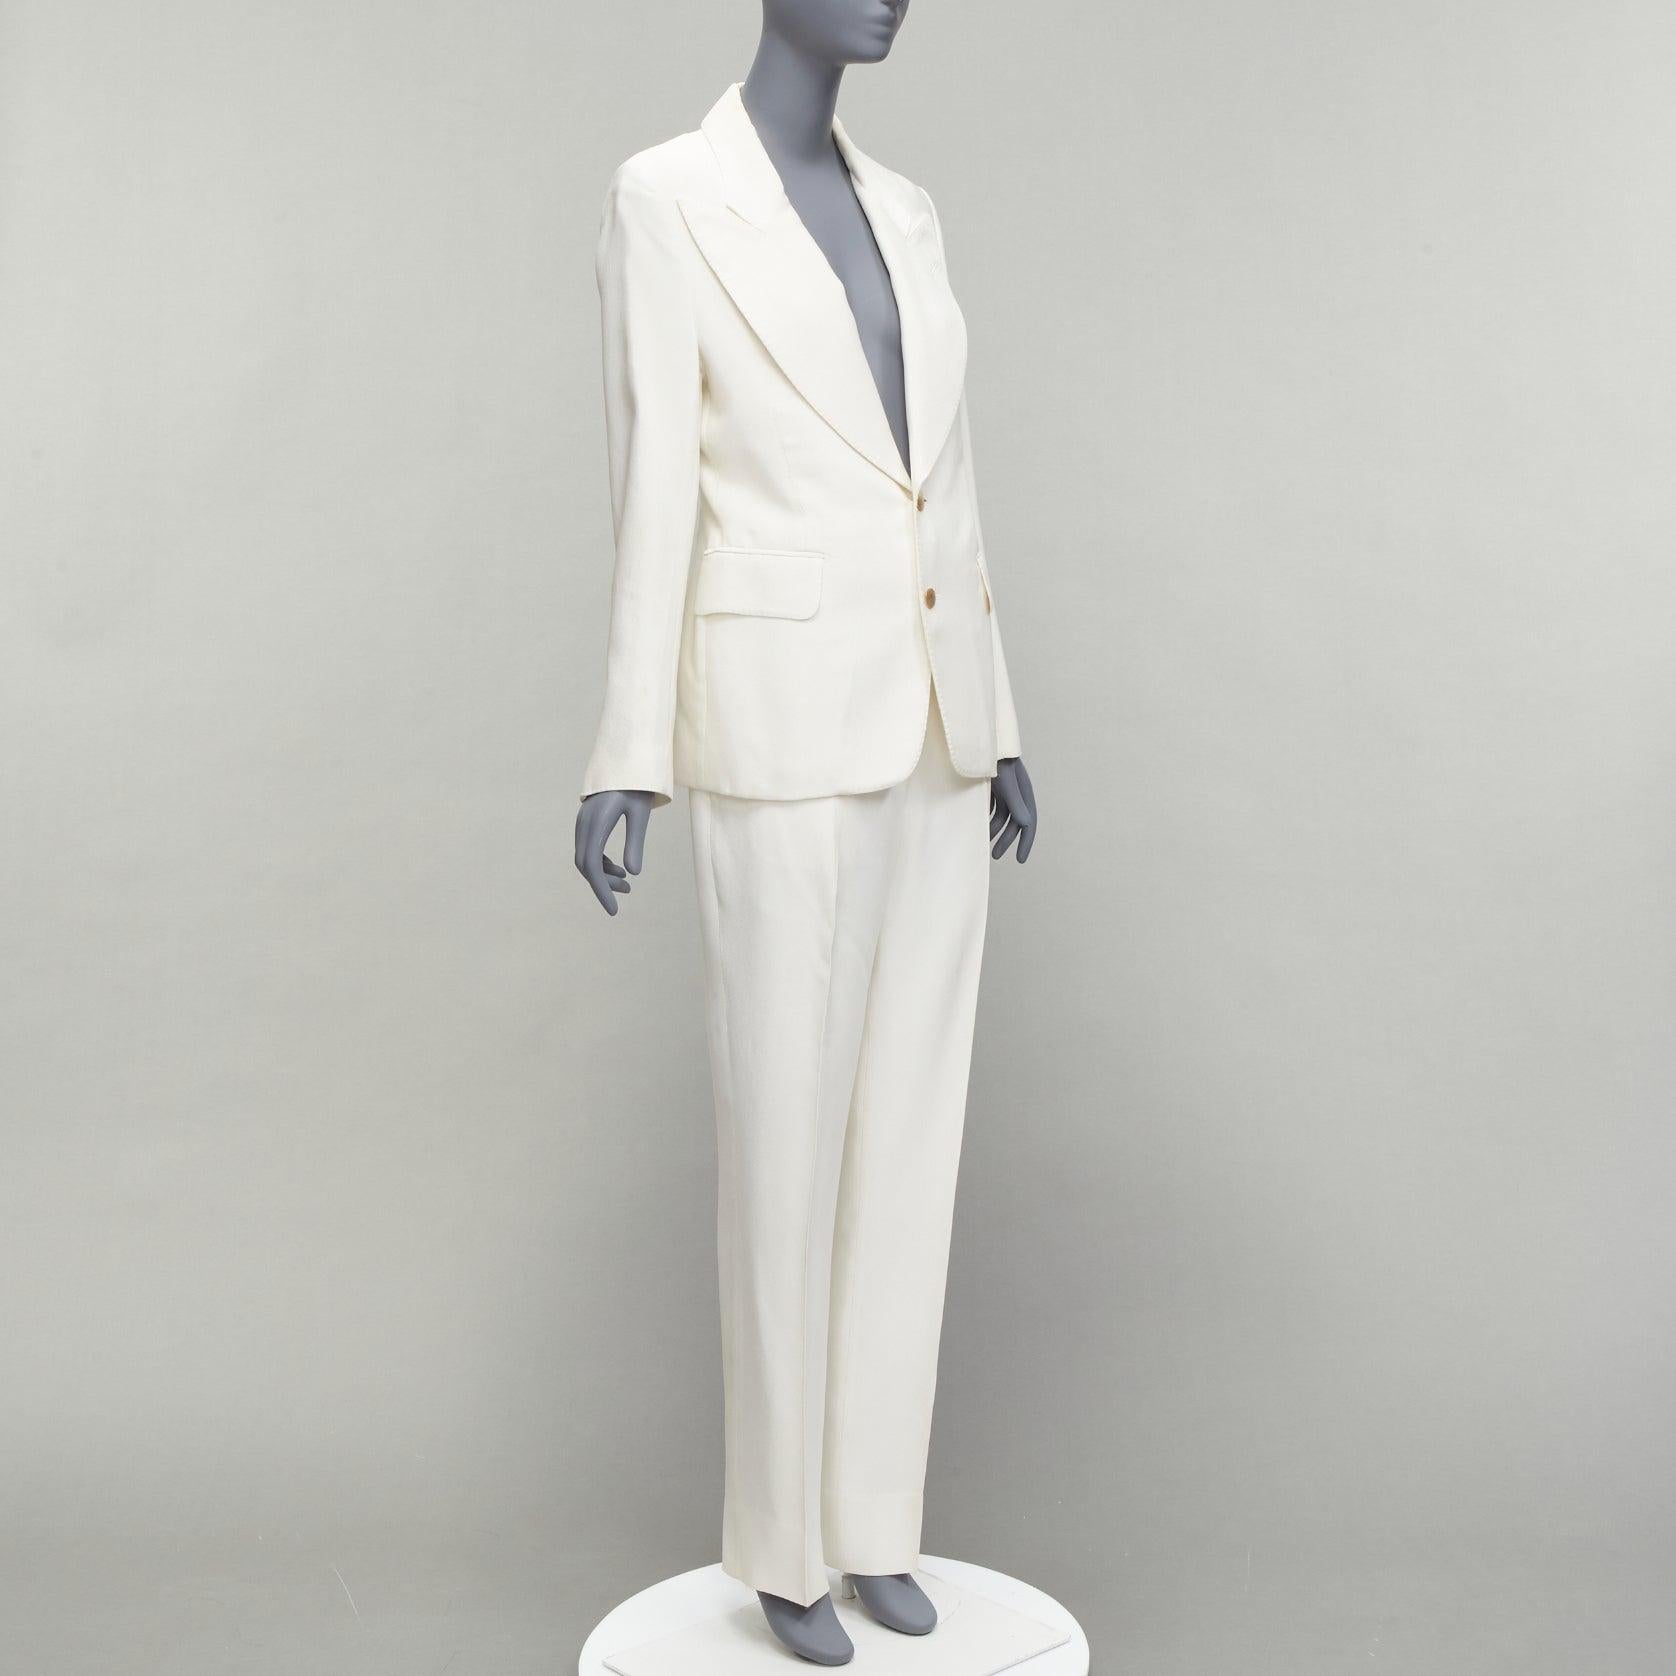 Women's TOM FORD ivory wide lapels gold2- button blazer jacket pants suit IT44 L